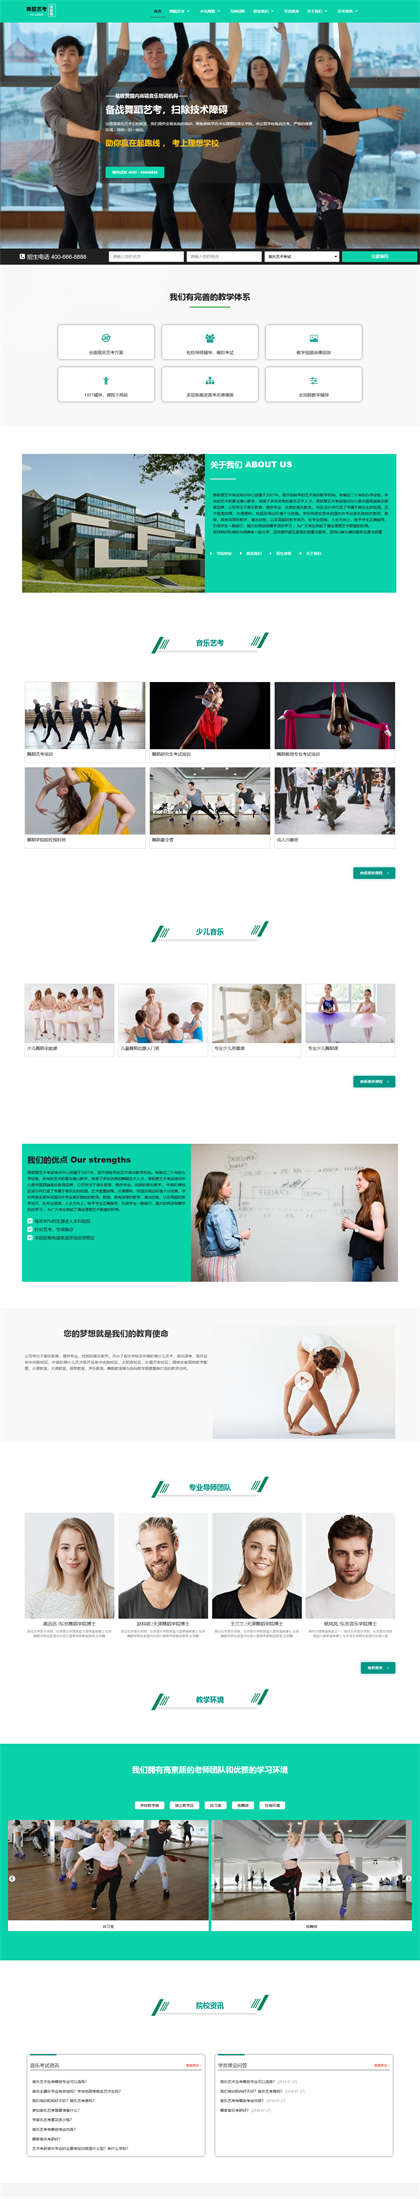 舞蹈艺术培训机构-舞蹈艺考培训-跳舞培训机构-舞蹈中心网站模板网站模板图片